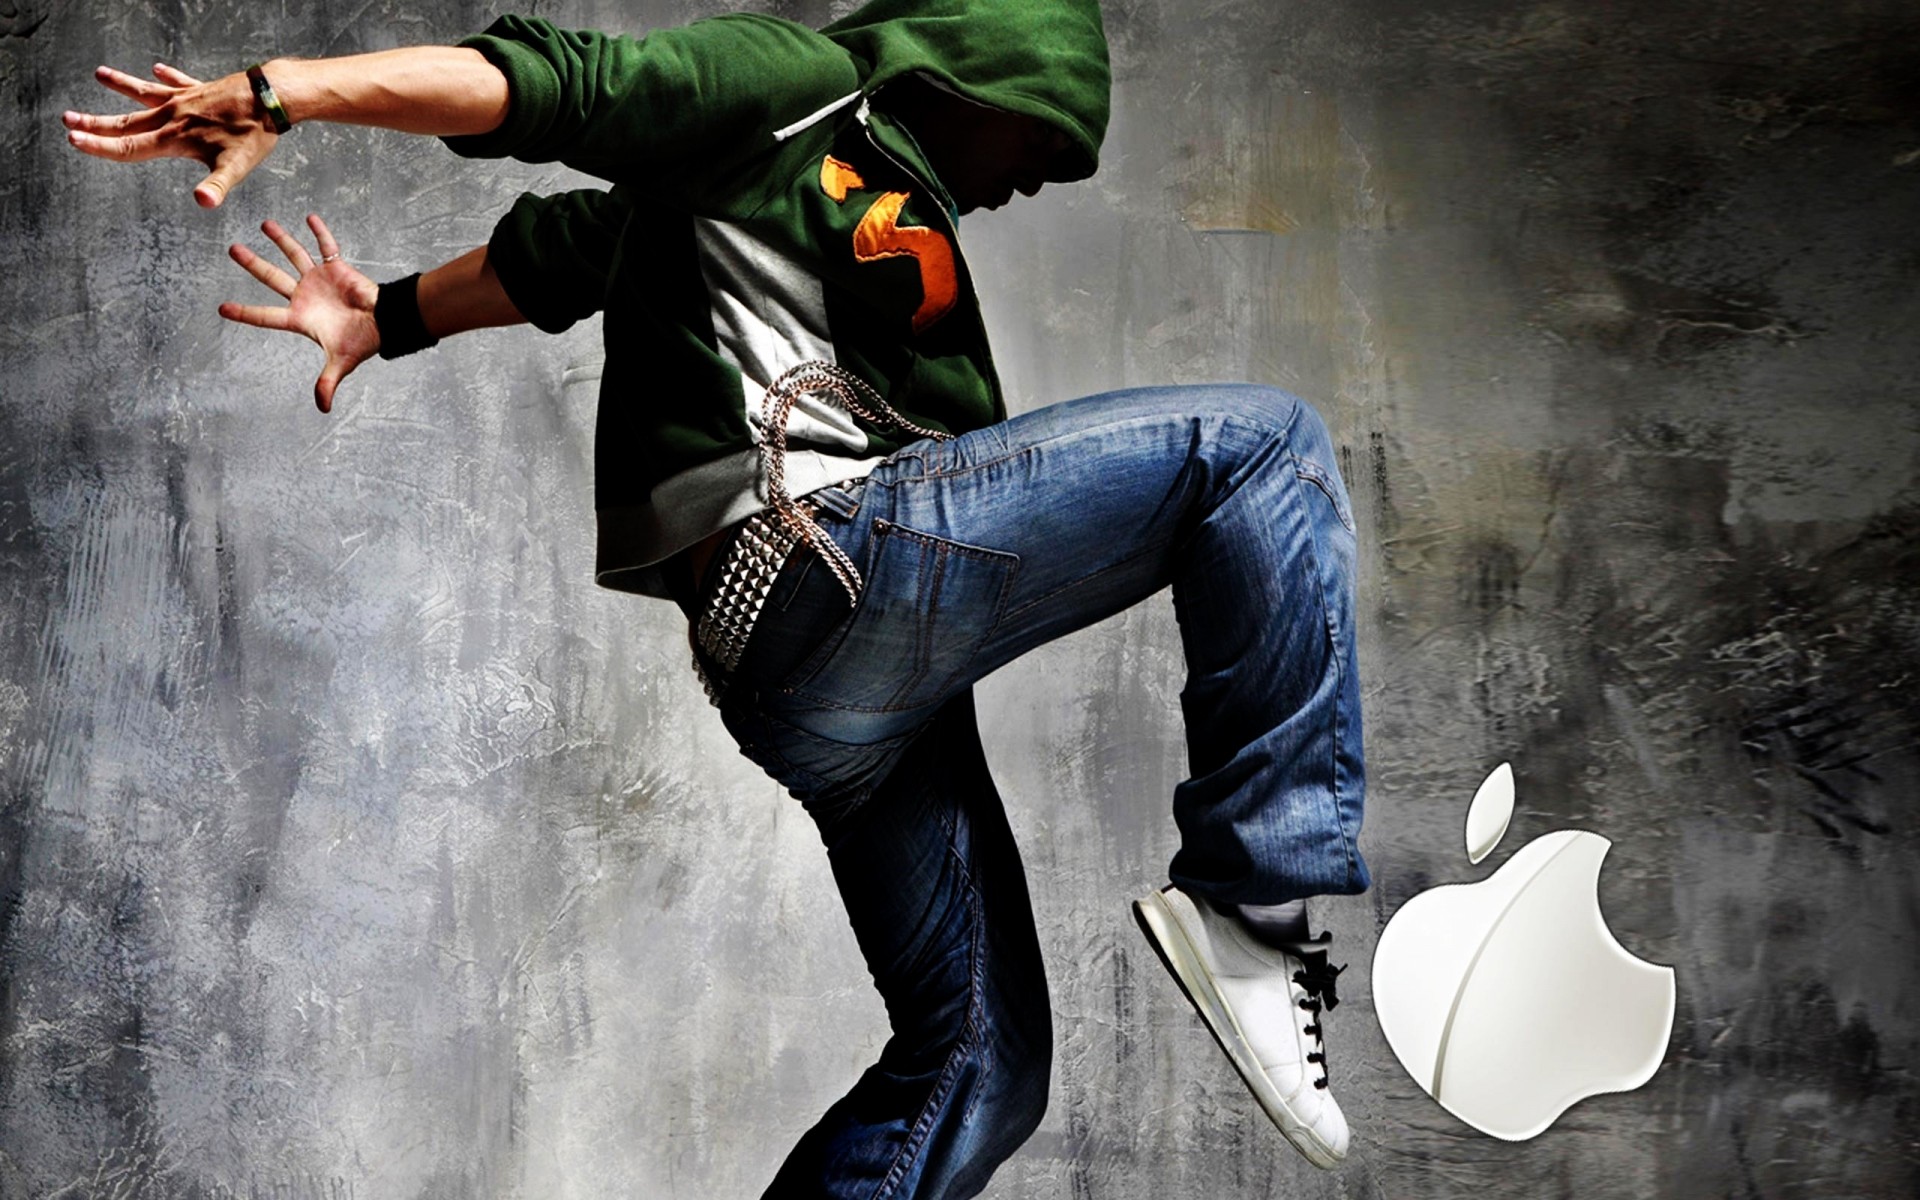 apple один человек взрослый музыка опасность на открытом воздухе производительности носить круто действие реп городской мода движения для ipod фон логотип apple логотип apple